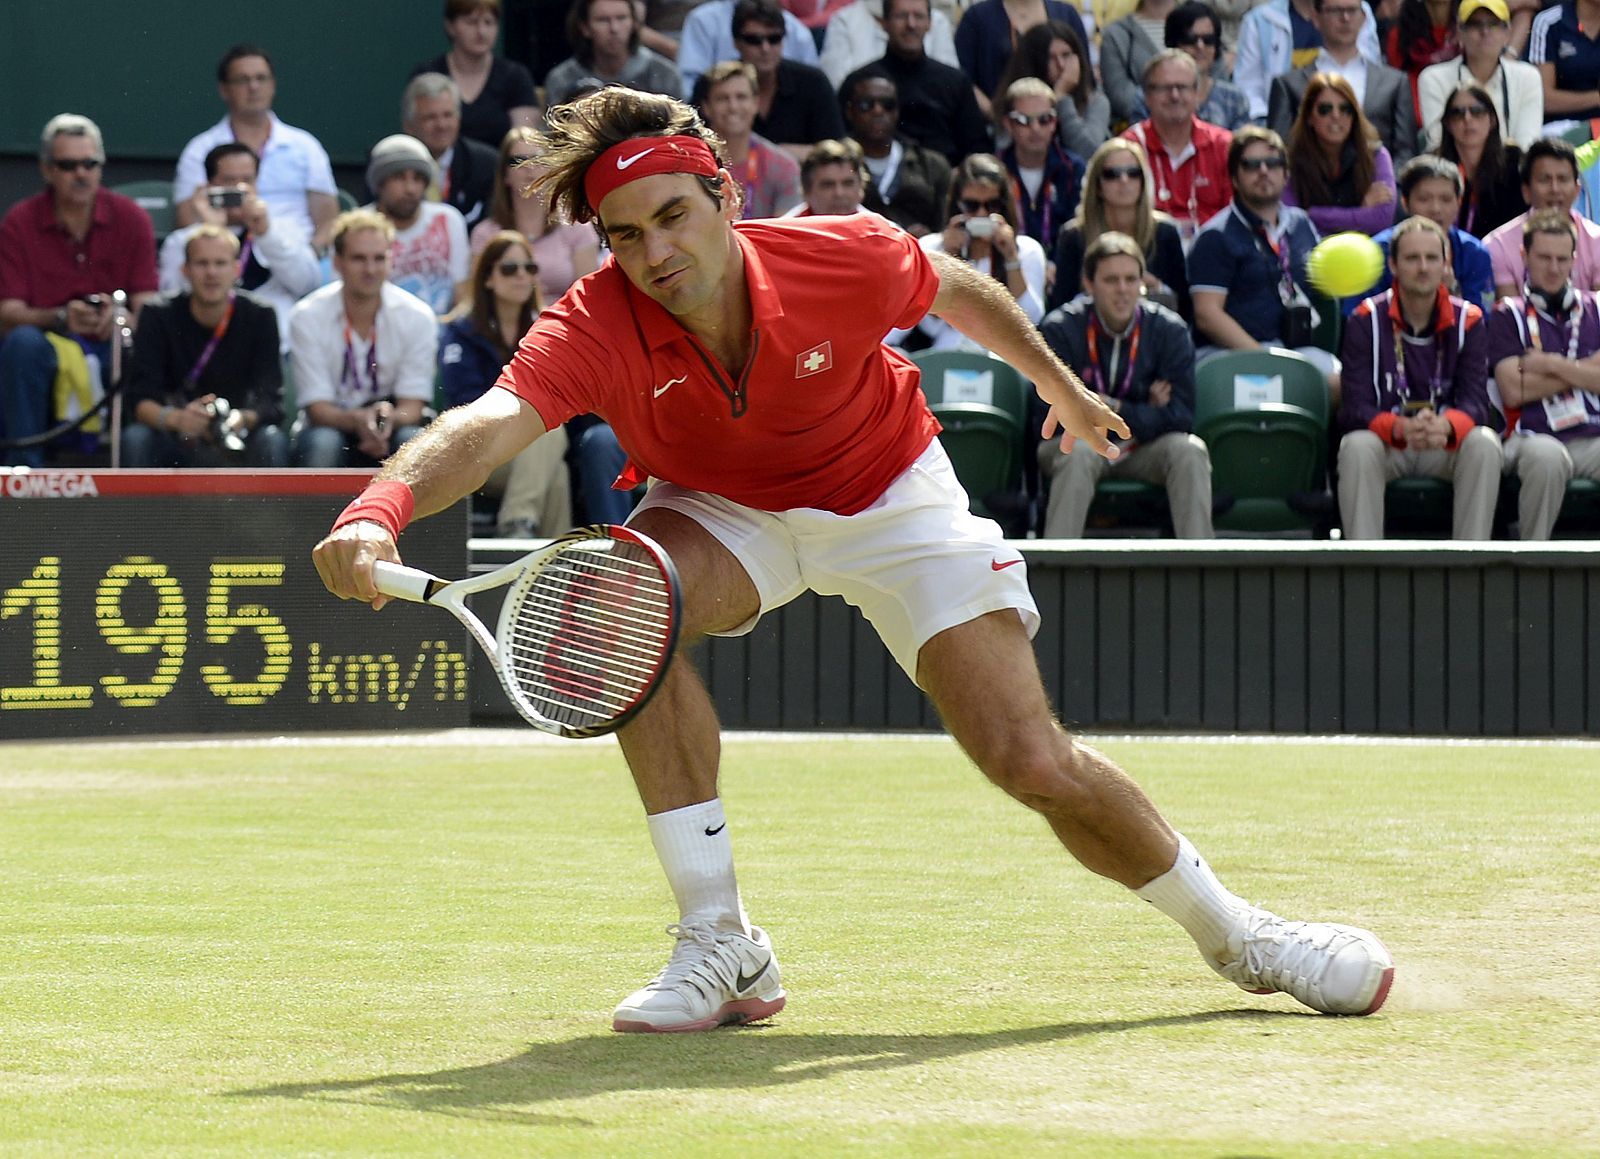 El tenista suizo Roger Federer devuelve la bola al argentino Juan Martín del Potro durante la semifinal de la competición olímpica de tenis disputada en Wimbledon, Londres.